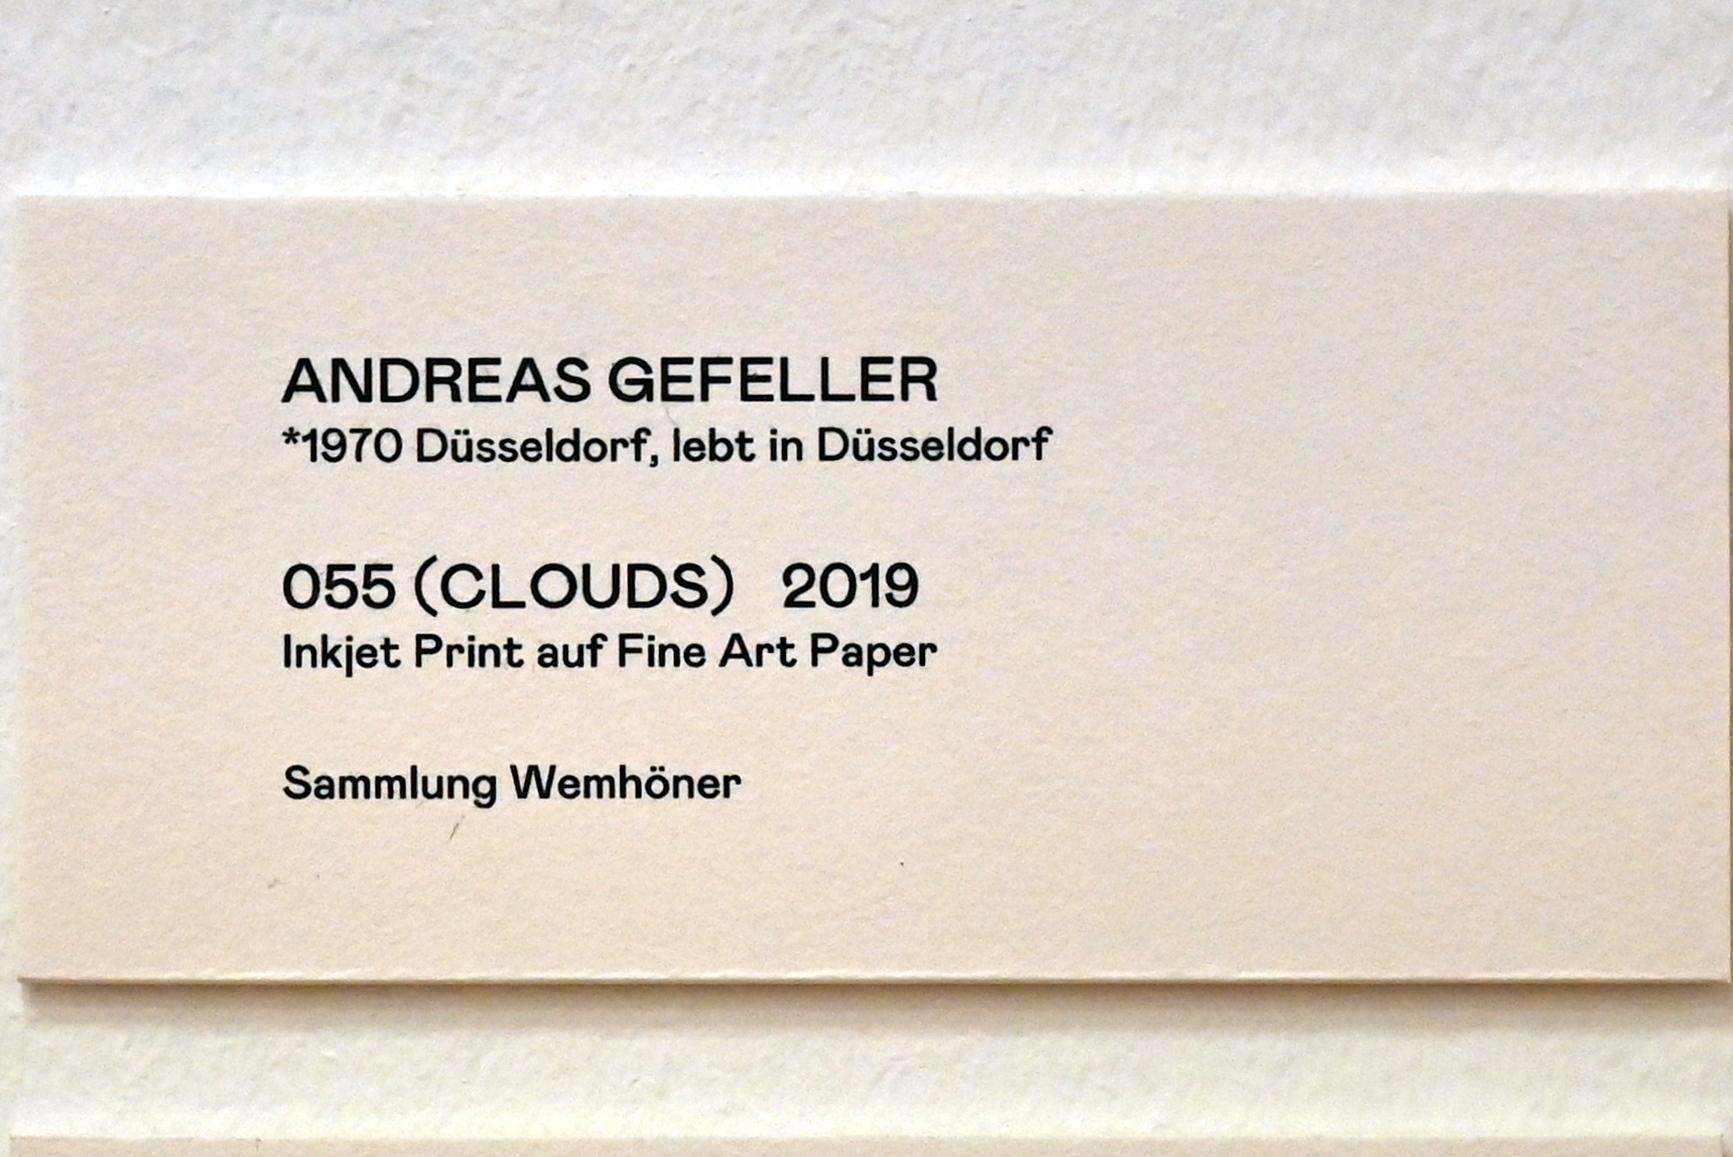 Andreas Gefeller (2019), 055 (Clouds), Bonn, Kunstmuseum, Ausstellung "Welt in der Schwebe" vom 24.02. - 19.06.2022, Saal 6, 2019, Bild 2/2